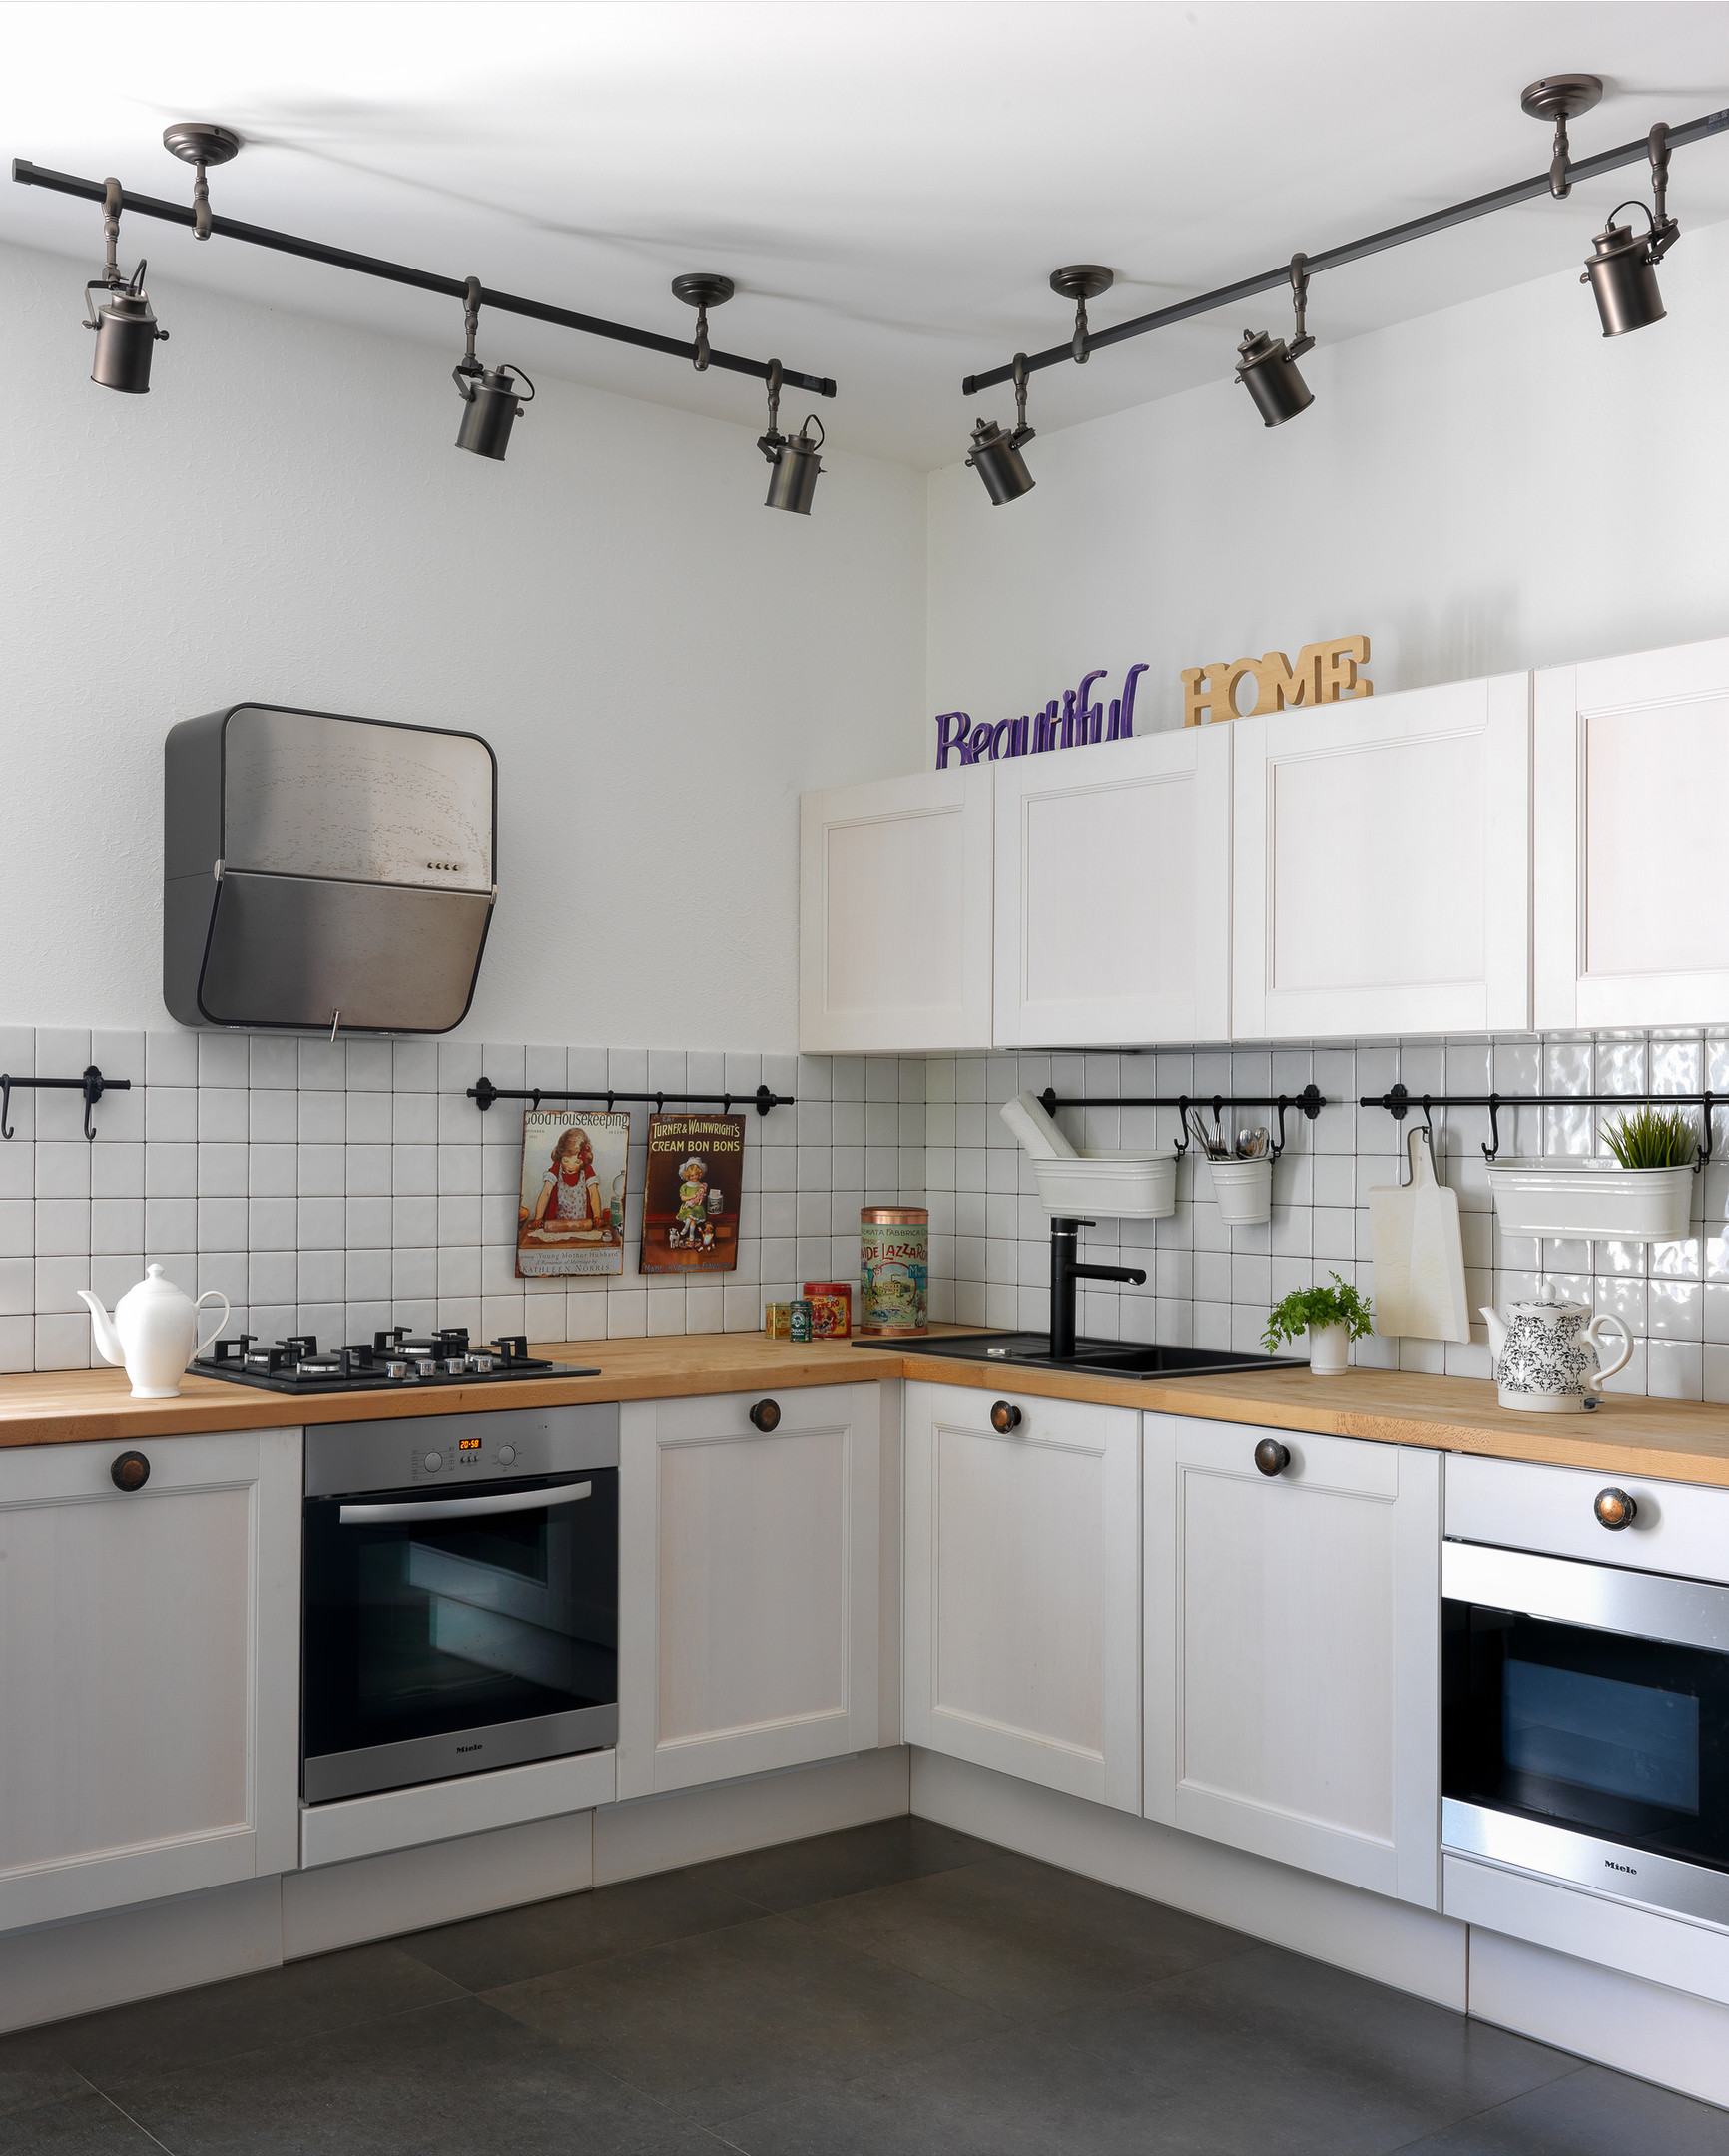 Phòng bếp thiết kế kiểu chữ L vuông góc với căn phòng tạo nên không gian nấu nướng tiện nghi. Bức tường tại khu vực backsplash được ốp gạch vuông màu trắng, kết hợp những thanh treo màu đen để trưng bày đồ dùng nhà bếp.